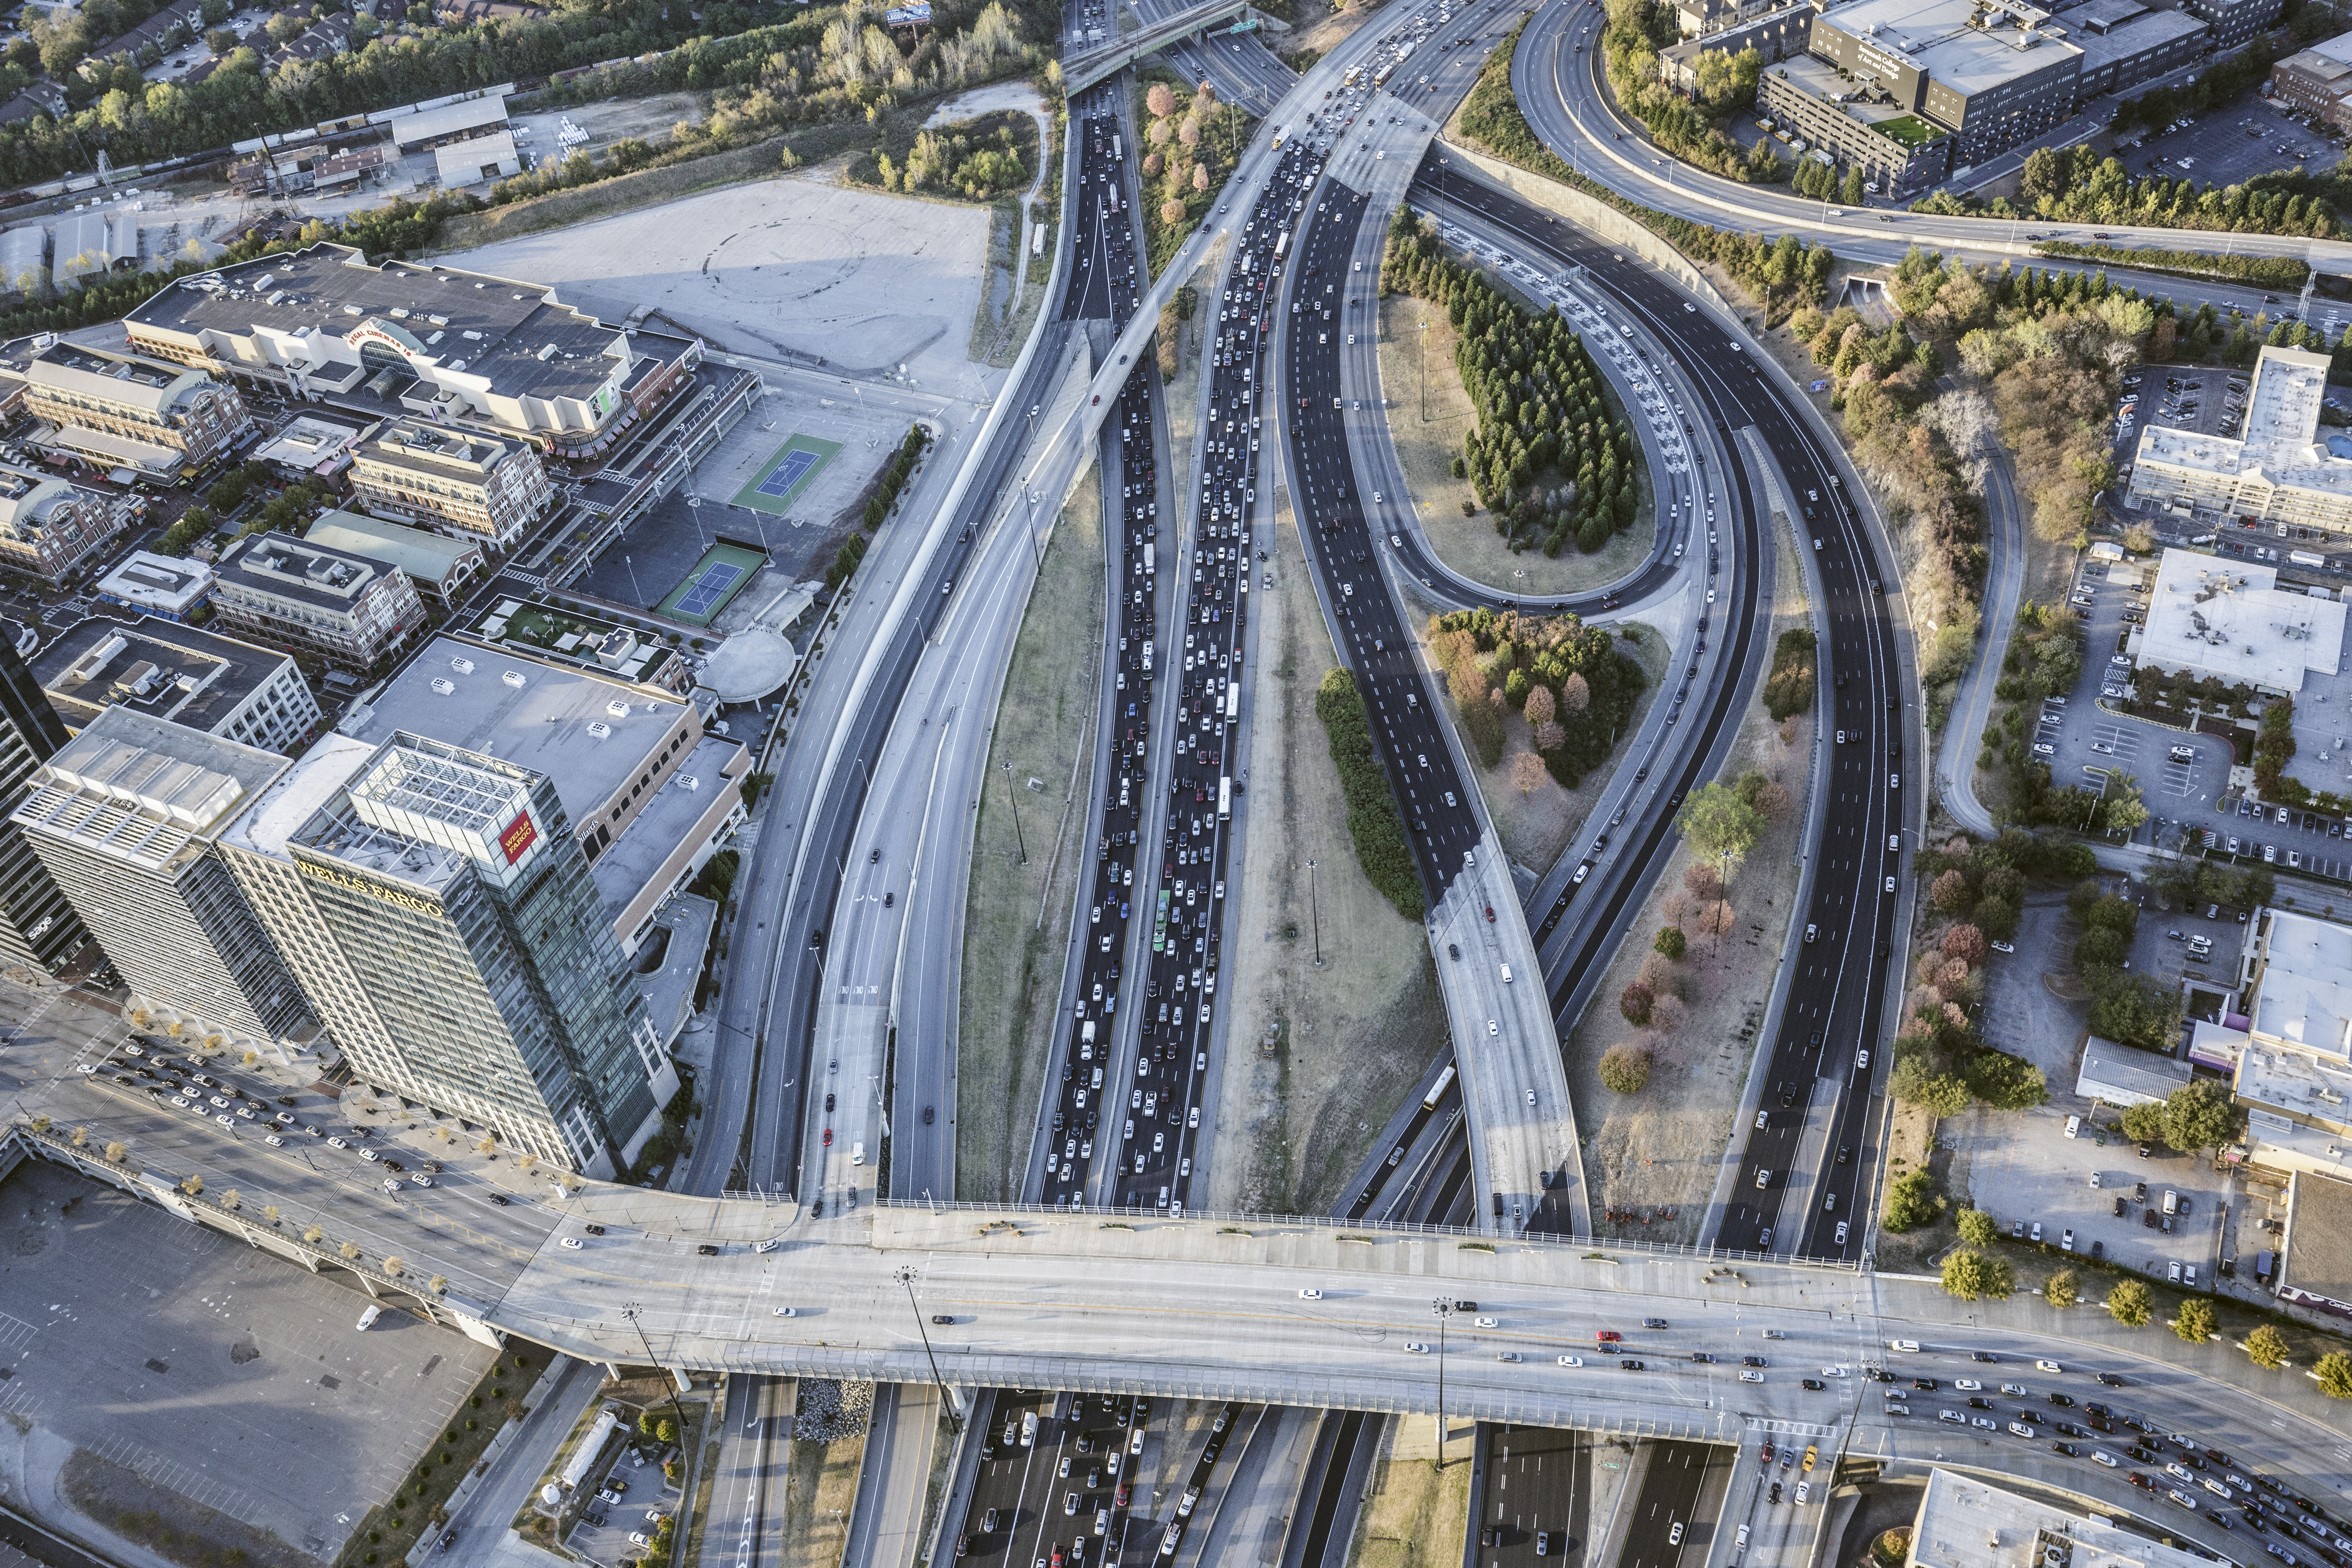 Aerial view of traffic in Atlanta at rush hour.